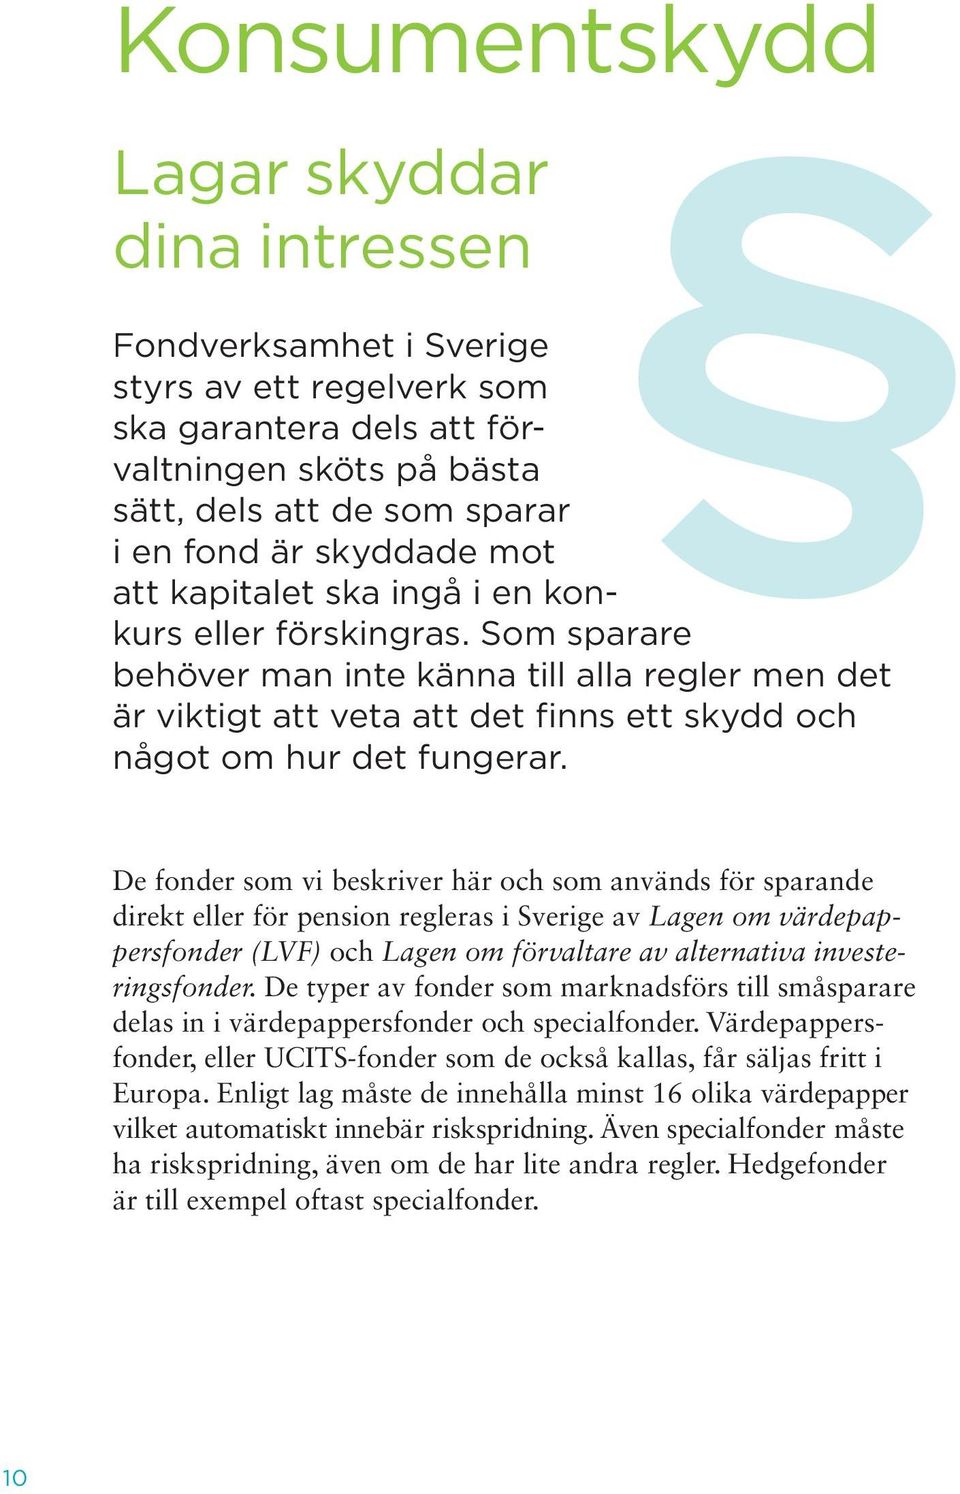 De fonder som vi beskriver här och som används för sparande direkt eller för pension regleras i Sverige av Lagen om värdepappersfonder (LVF) och Lagen om förvaltare av alternativa investeringsfonder.